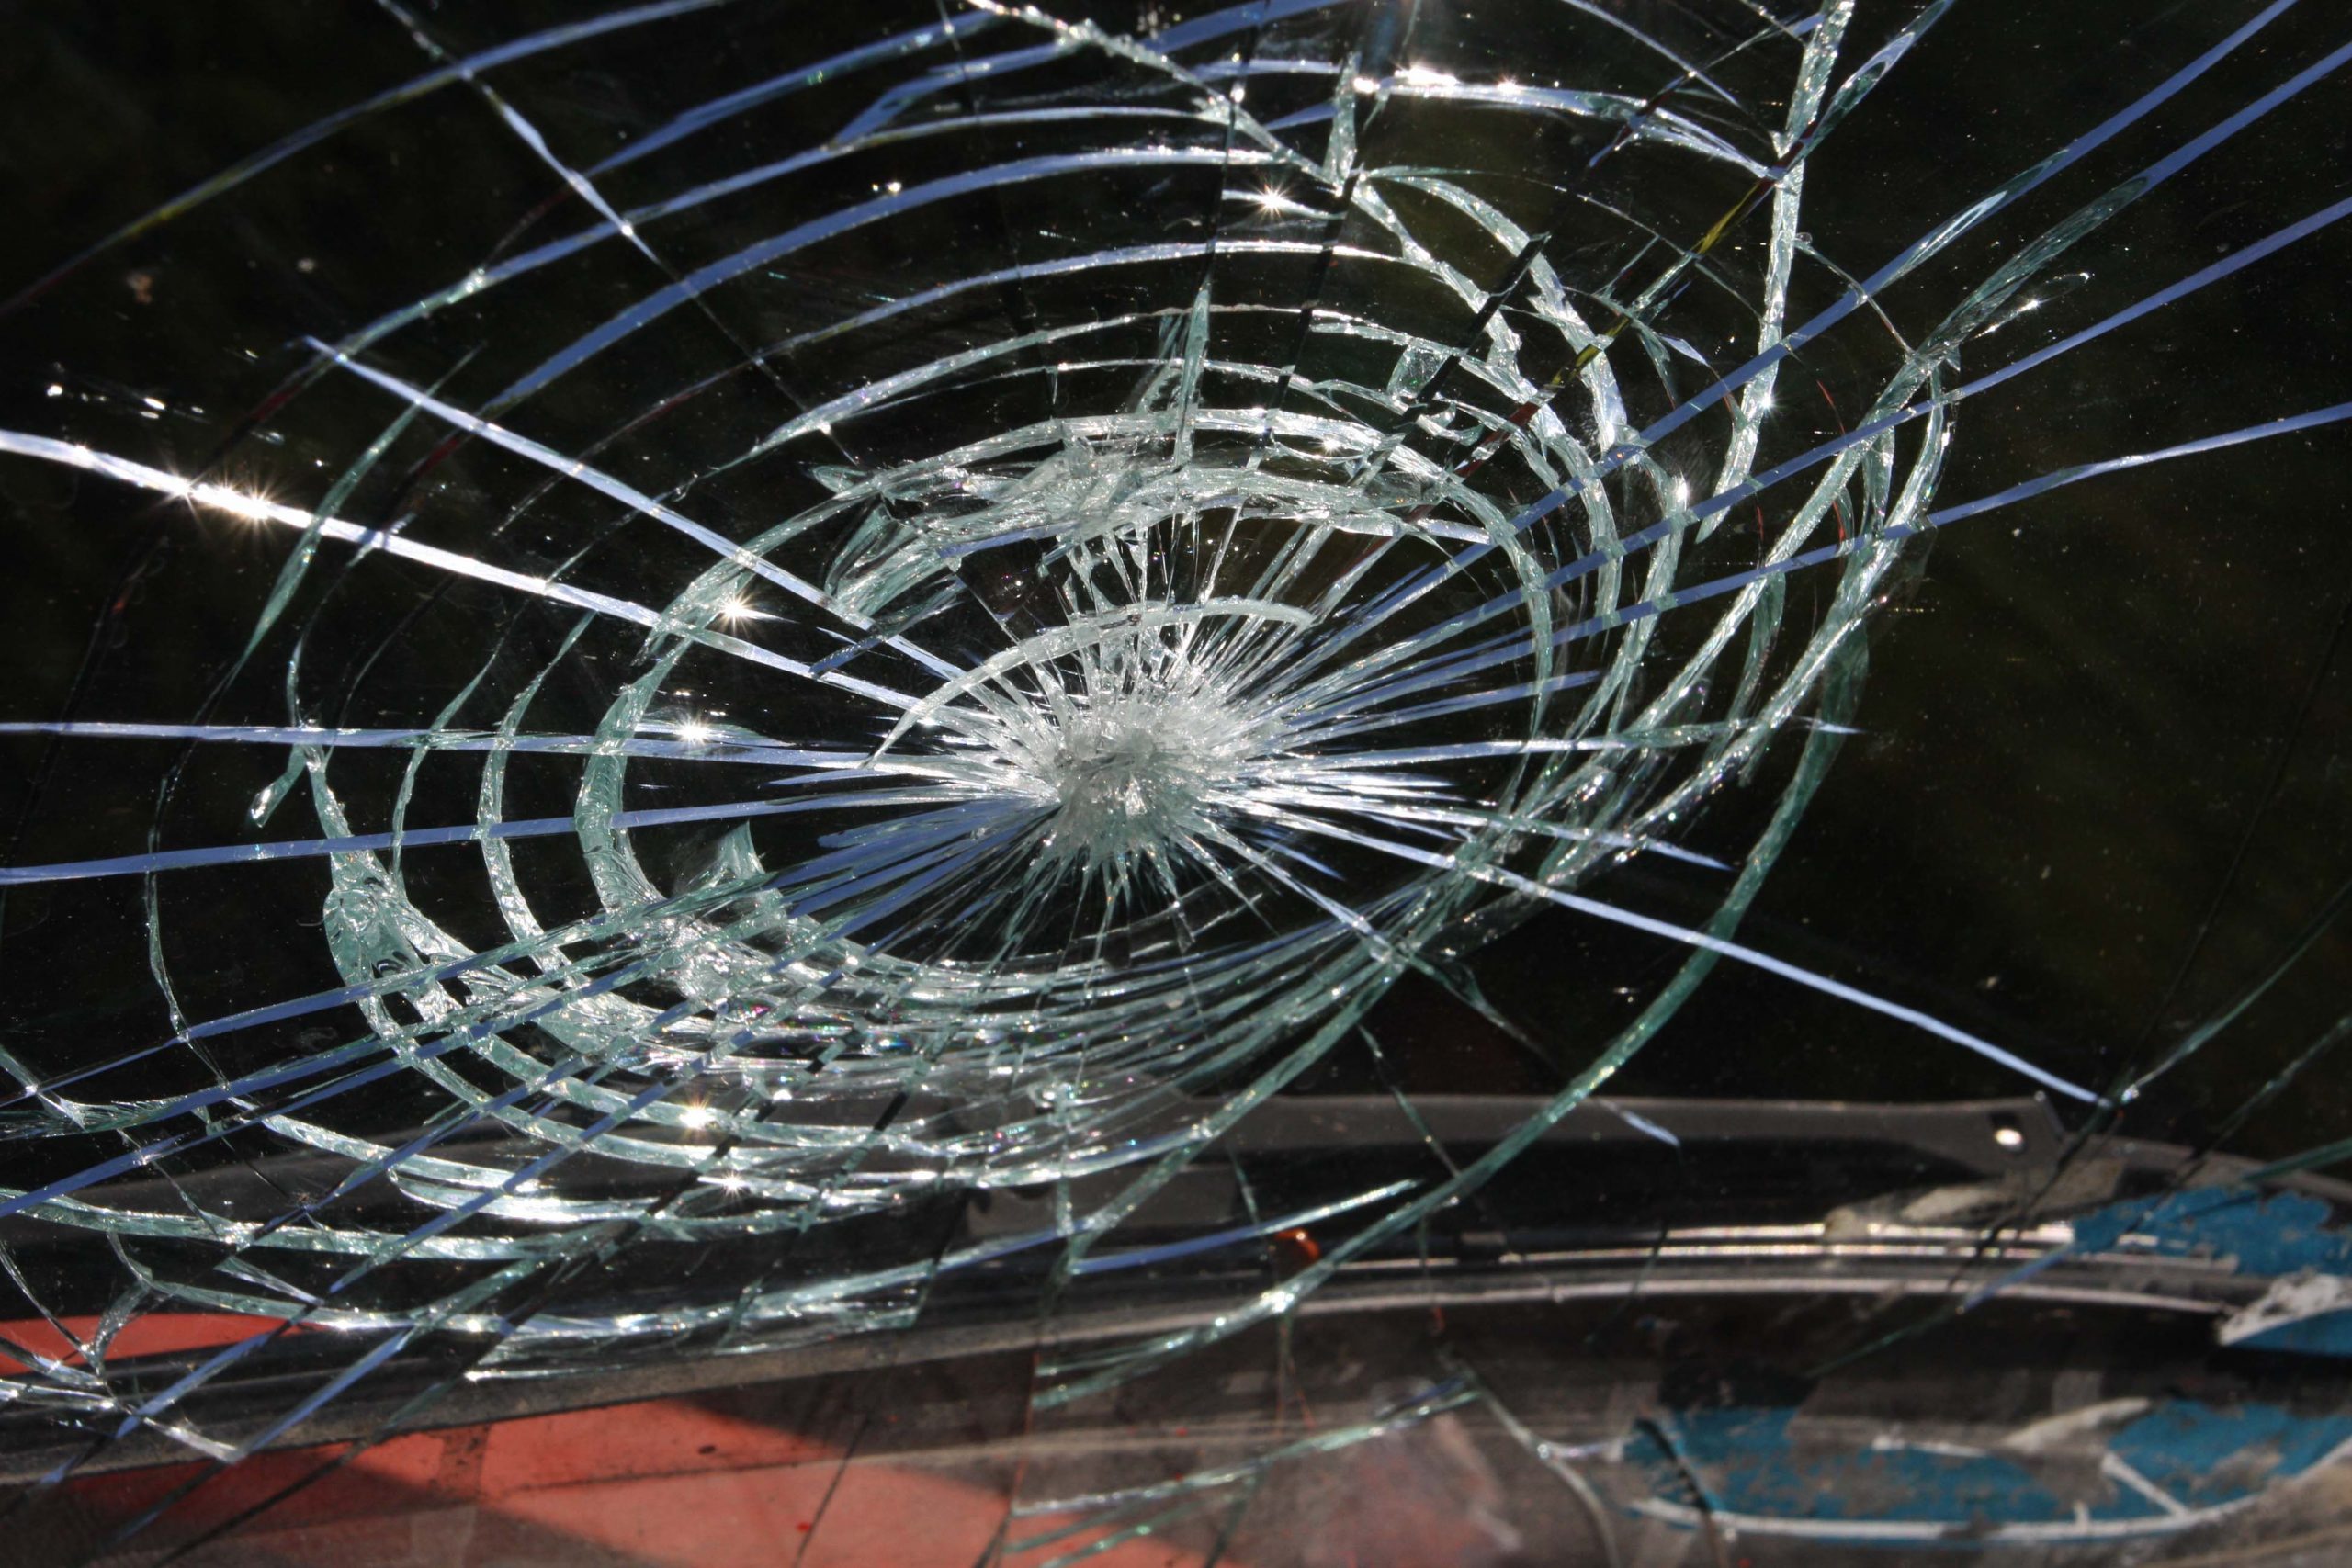 Van owner discovers smashed windscreen in Kilmacrennan - Highland Radio ...